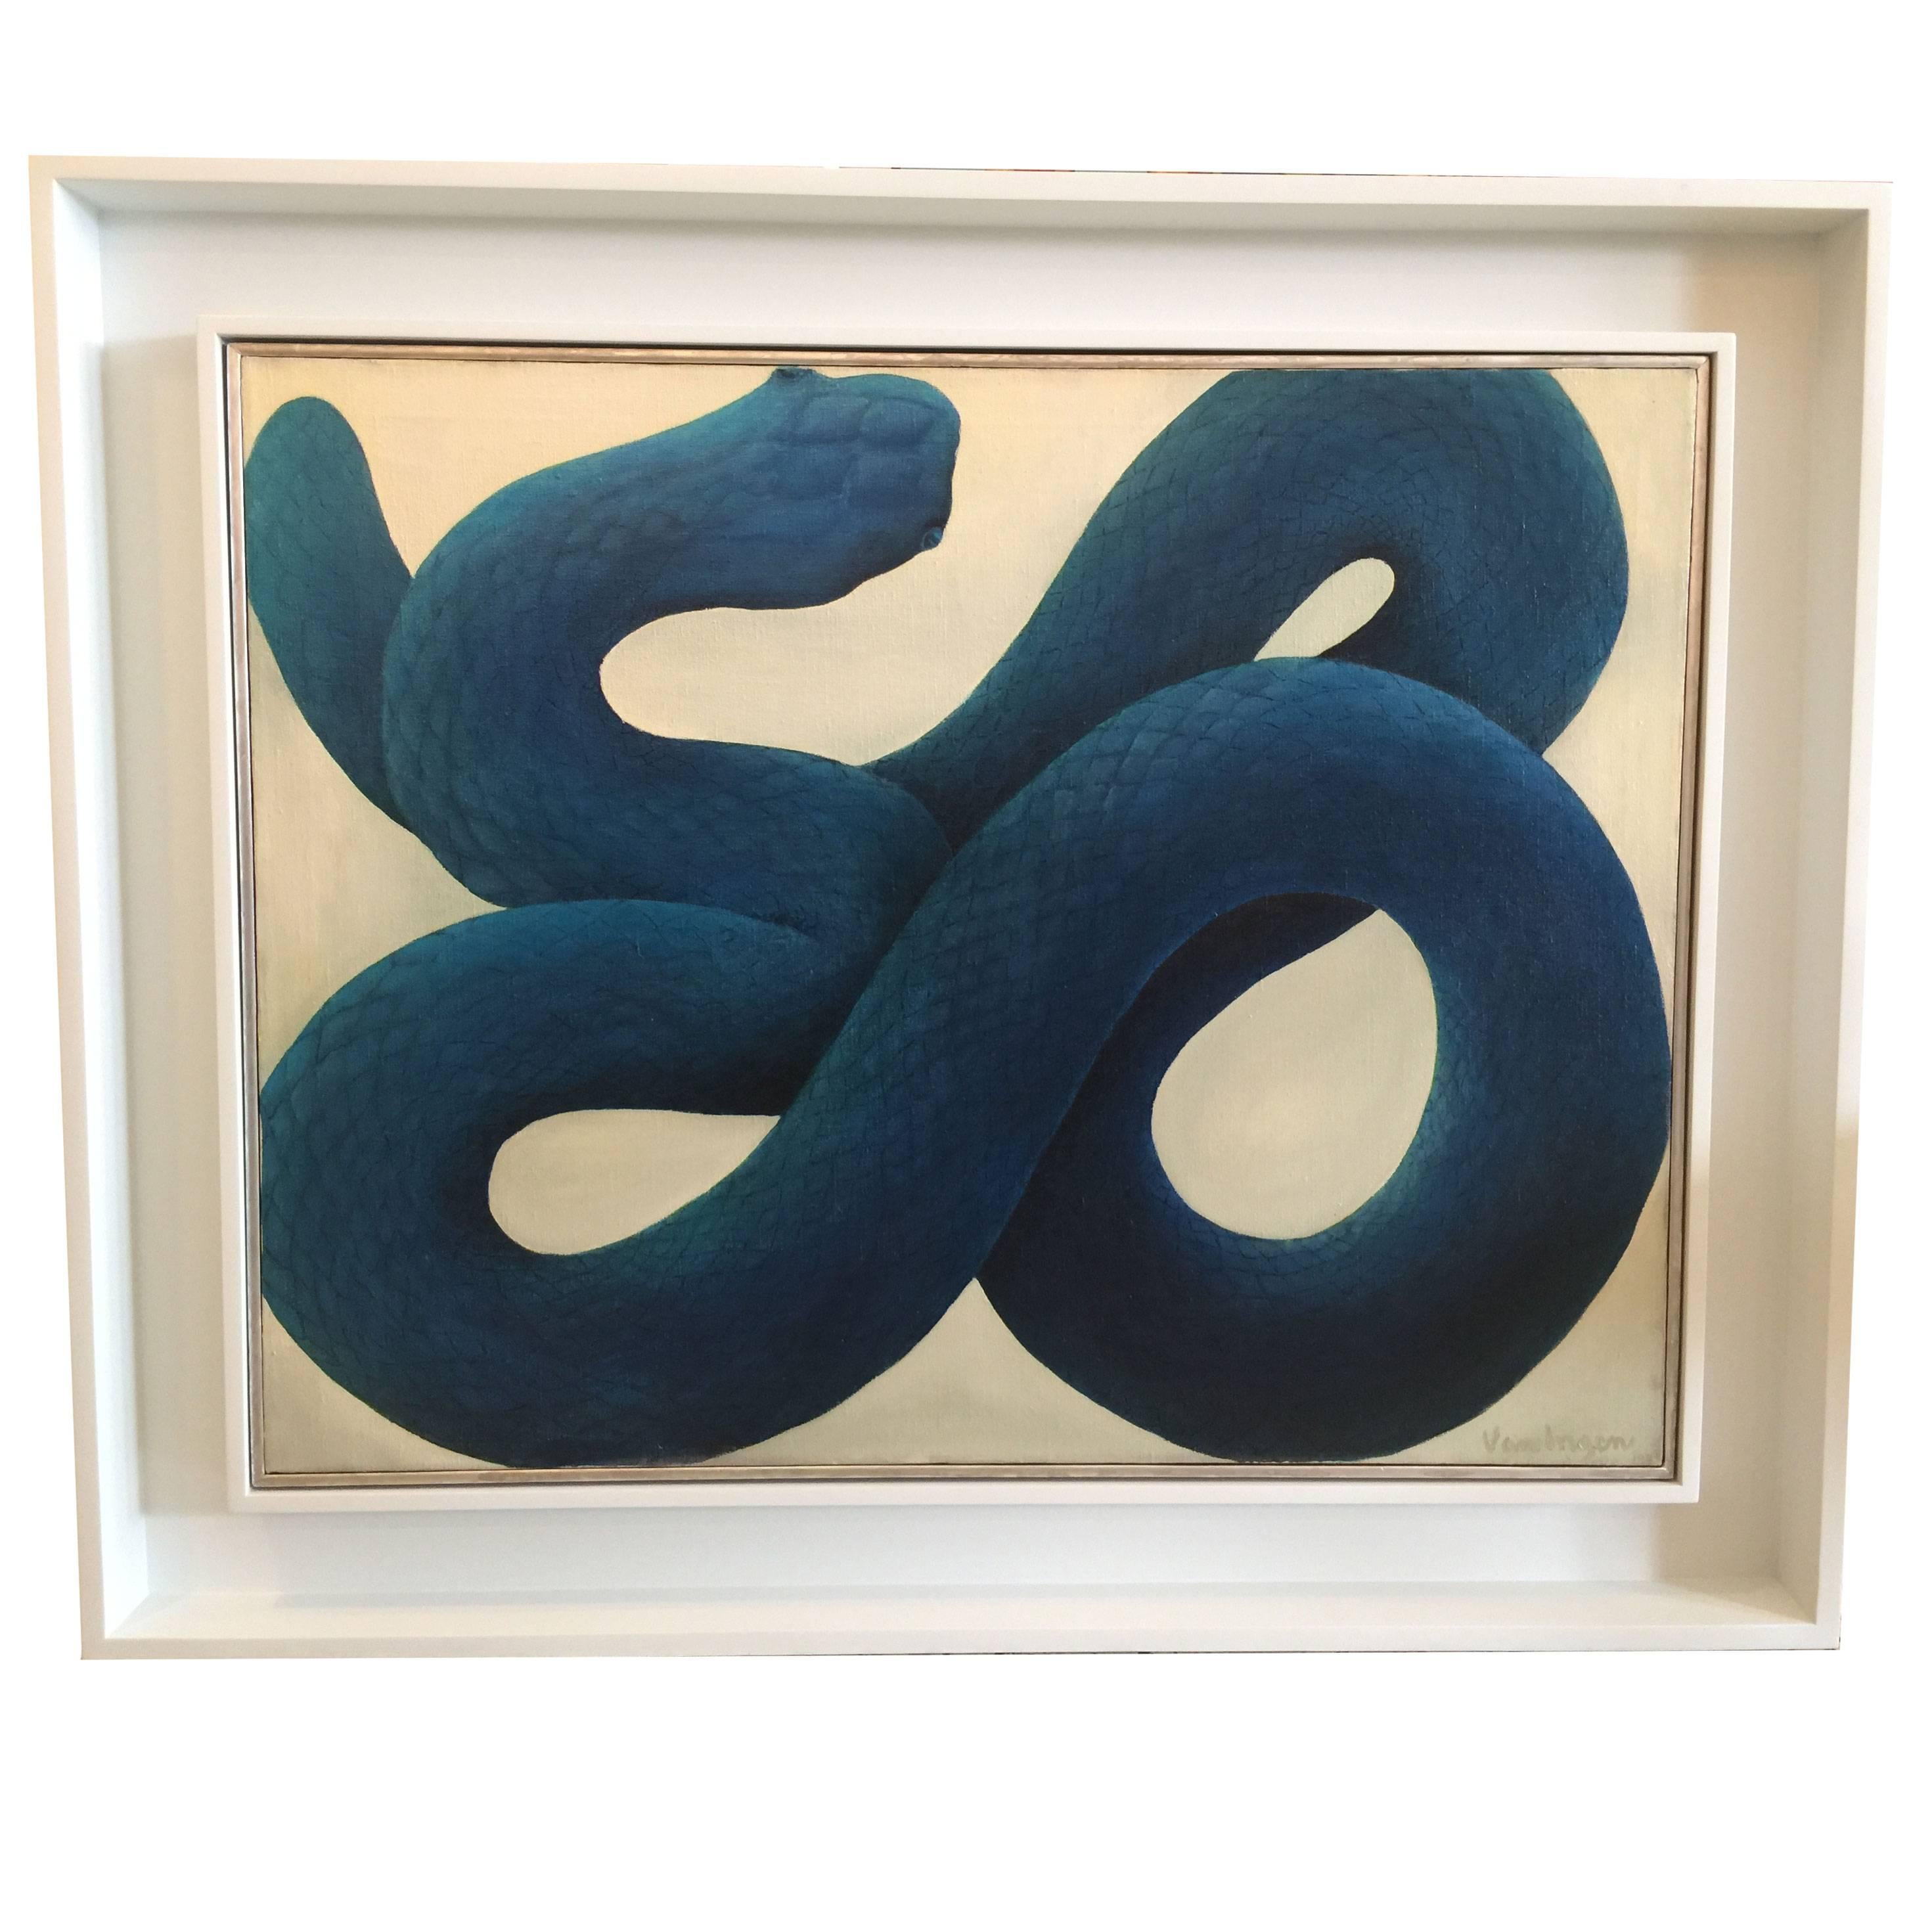 Blue Serpent by Van Lagen, 1970